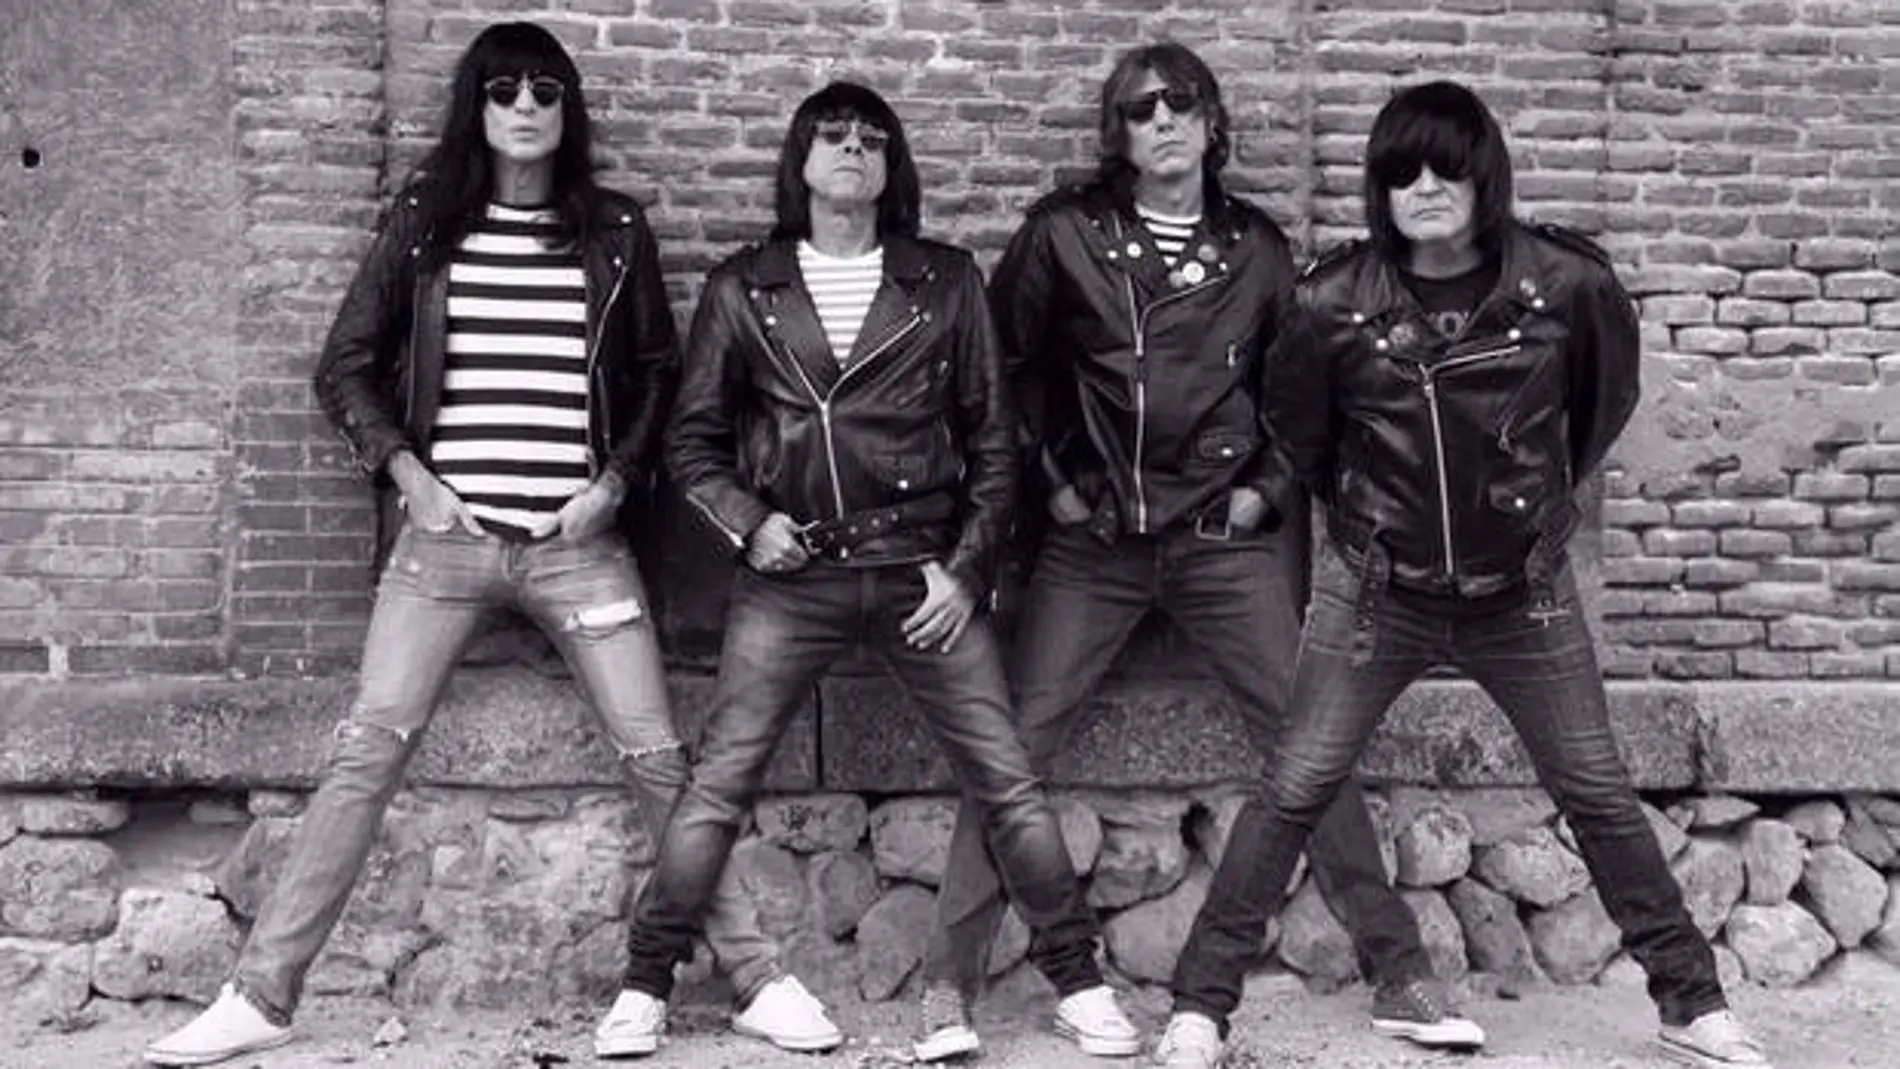 Los Ramones